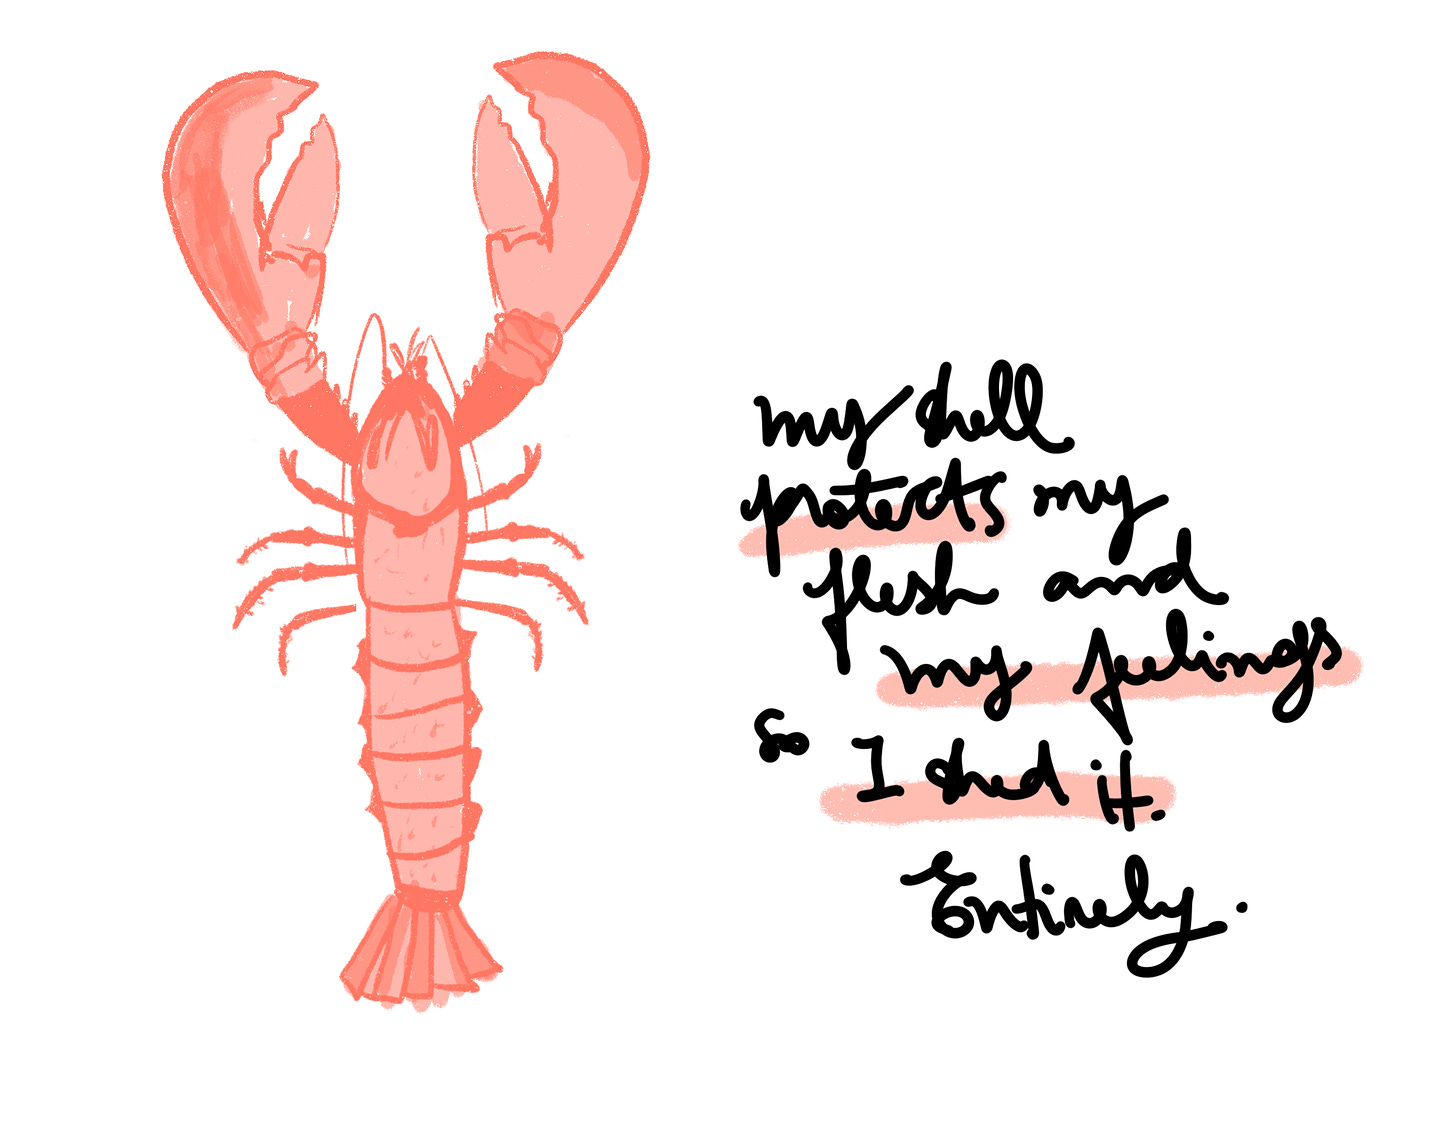 Desenho de uma lagosta com a frase "Minha crosta protege a minha carne e os meus sentimentos, por isso a descarto. Completamente"